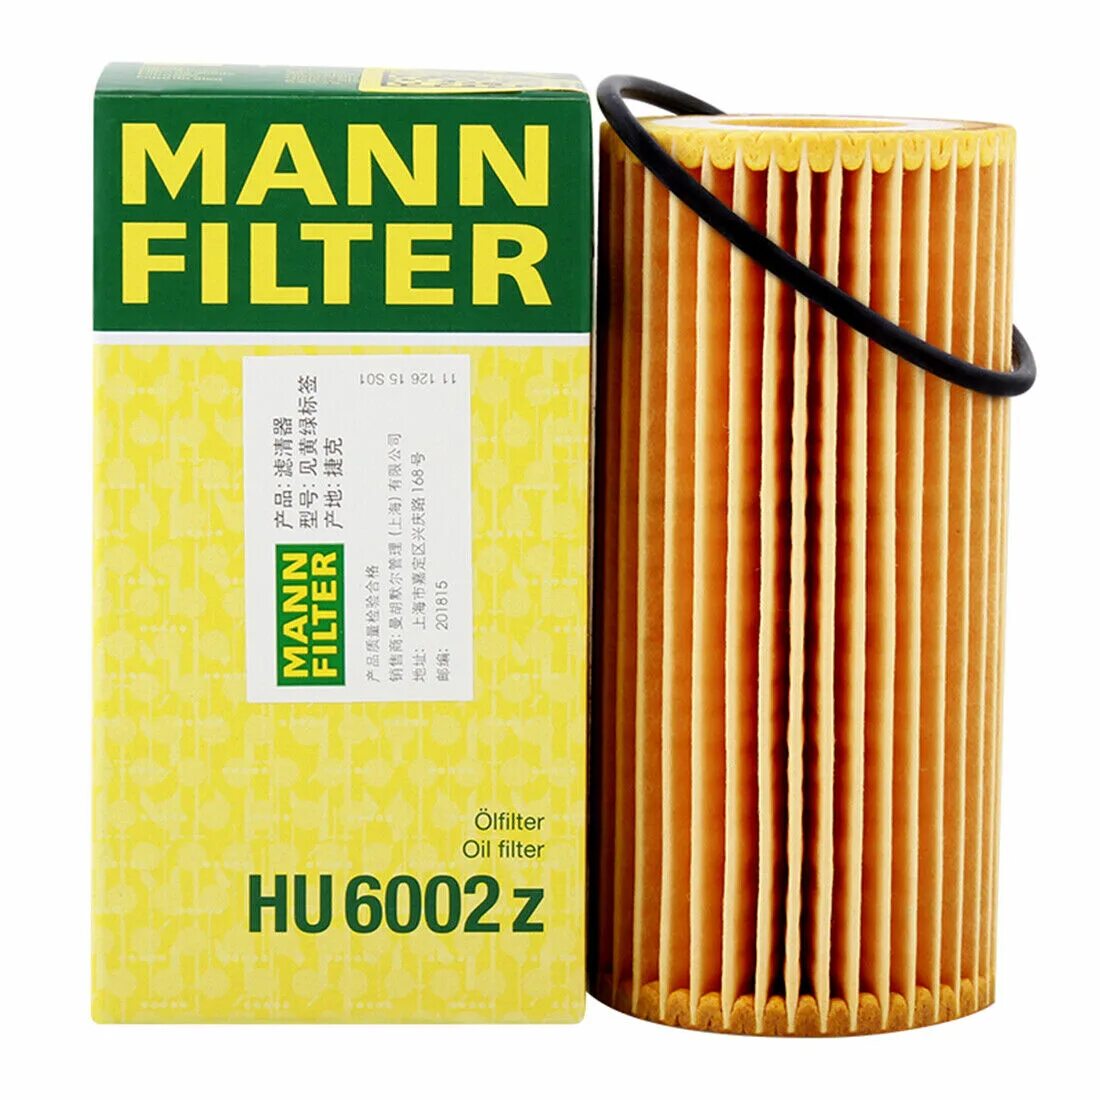 Mann фильтр оригинал. Фильтр Манн hu6013z. Фильтр масляный Mann hu 6002z. Масляный фильтр Манн hu6013z. Hu6013z Mann-Filter фильтр масляный.